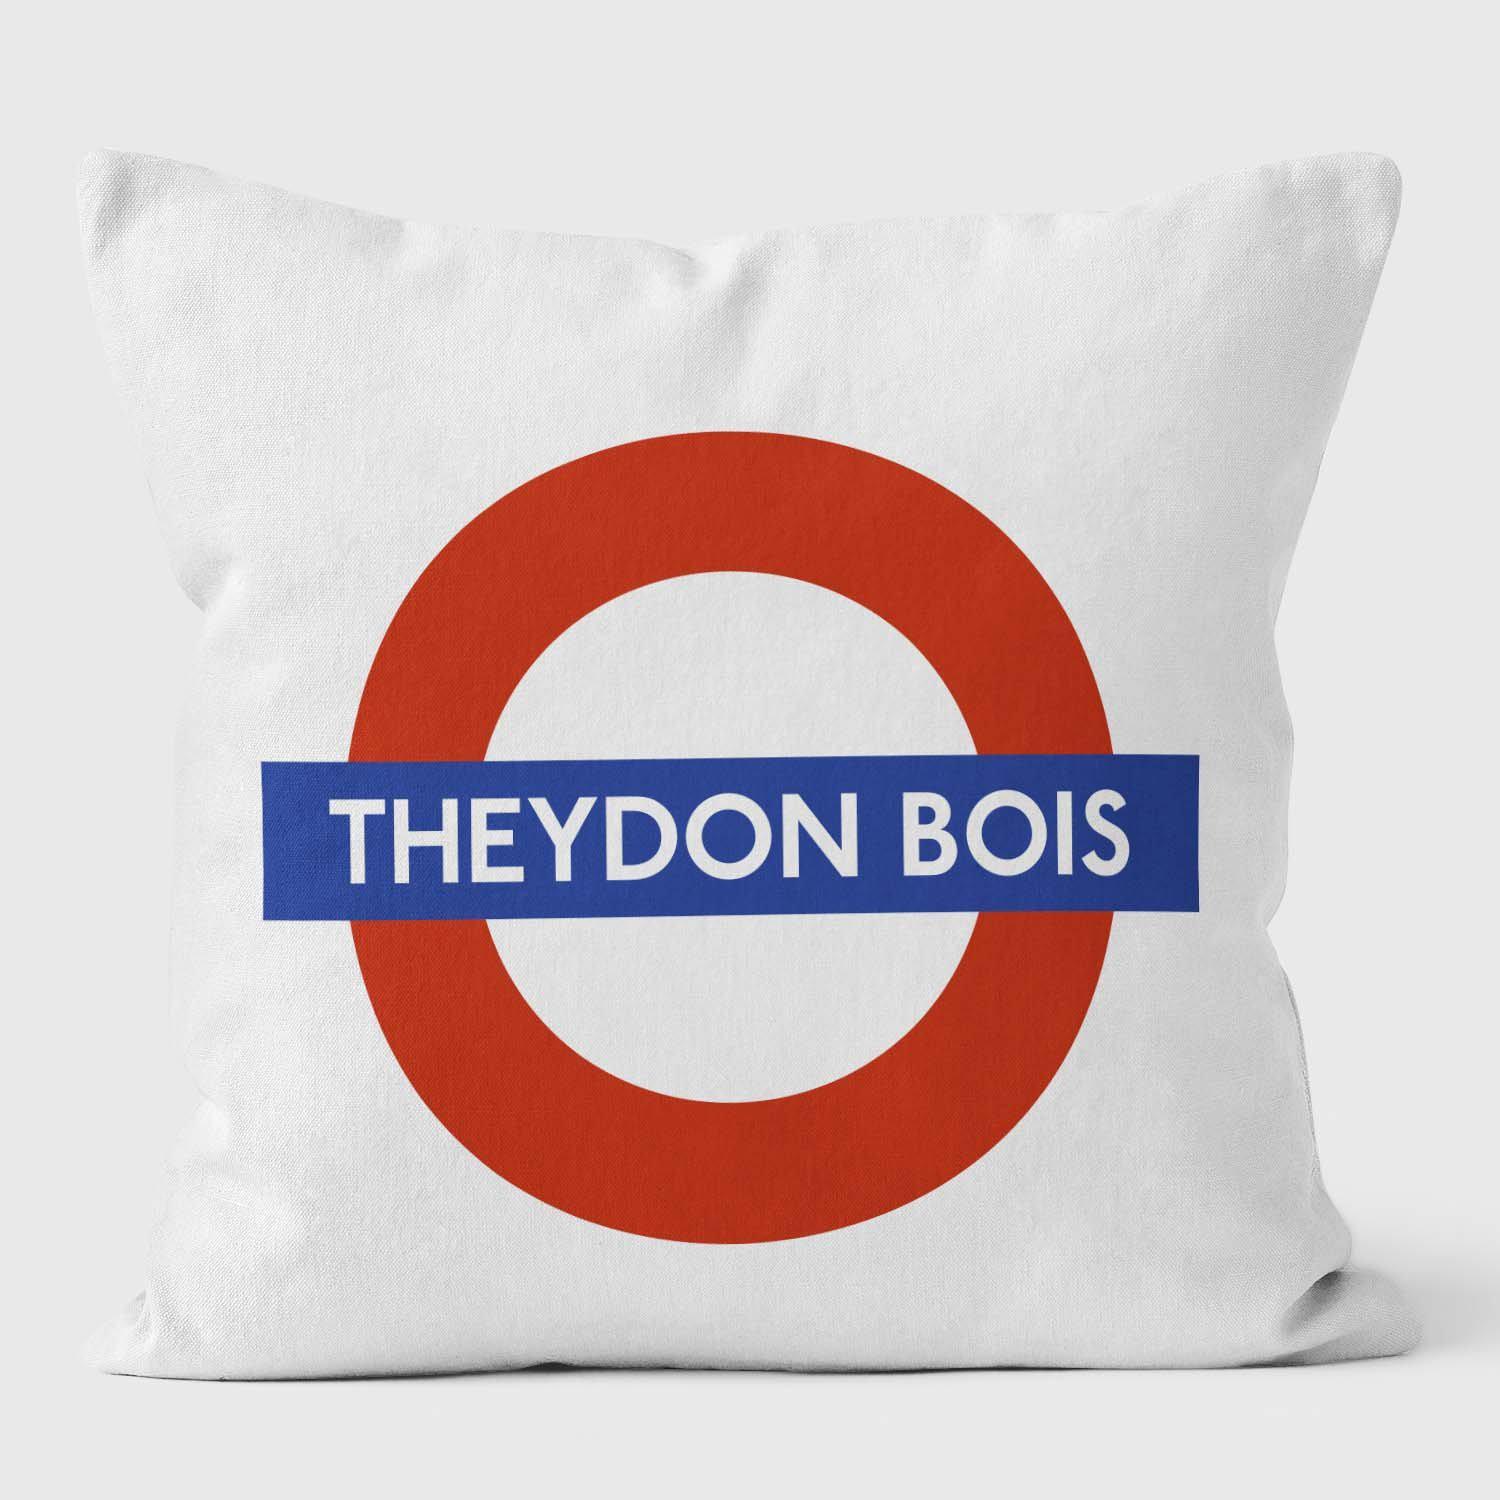 Theydon Bois London Underground Tube Station Roundel Cushion - Handmade Cushions UK - WeLoveCushions